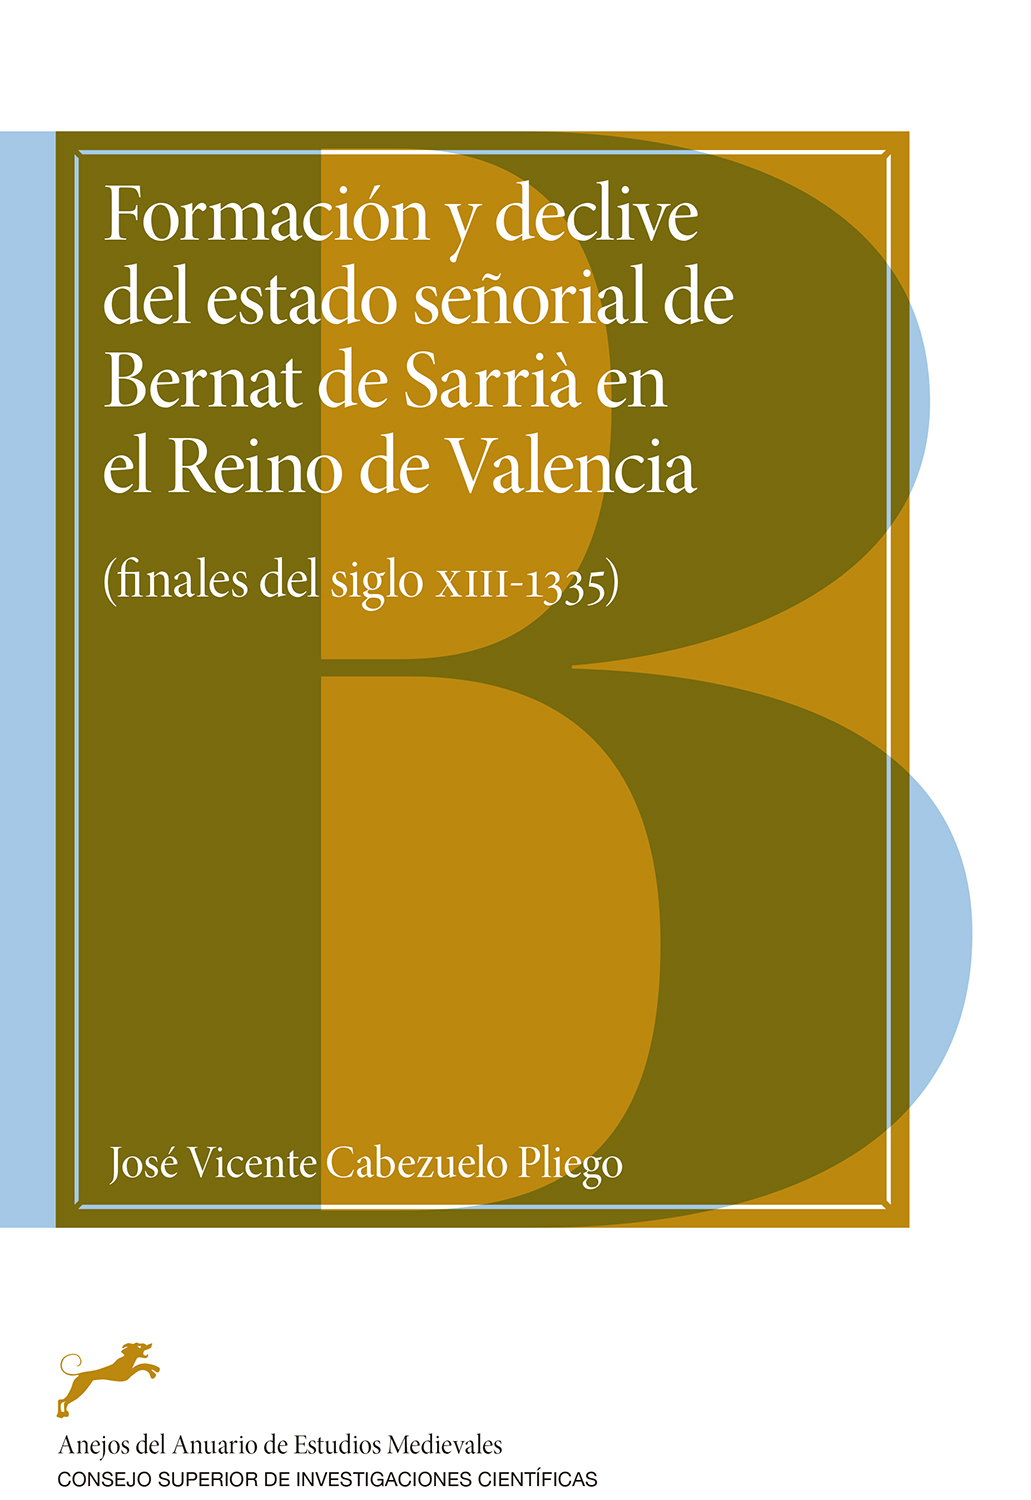 Formación y declive del estado señorial de Bernat de Sarrià en el Reino de Valencia 